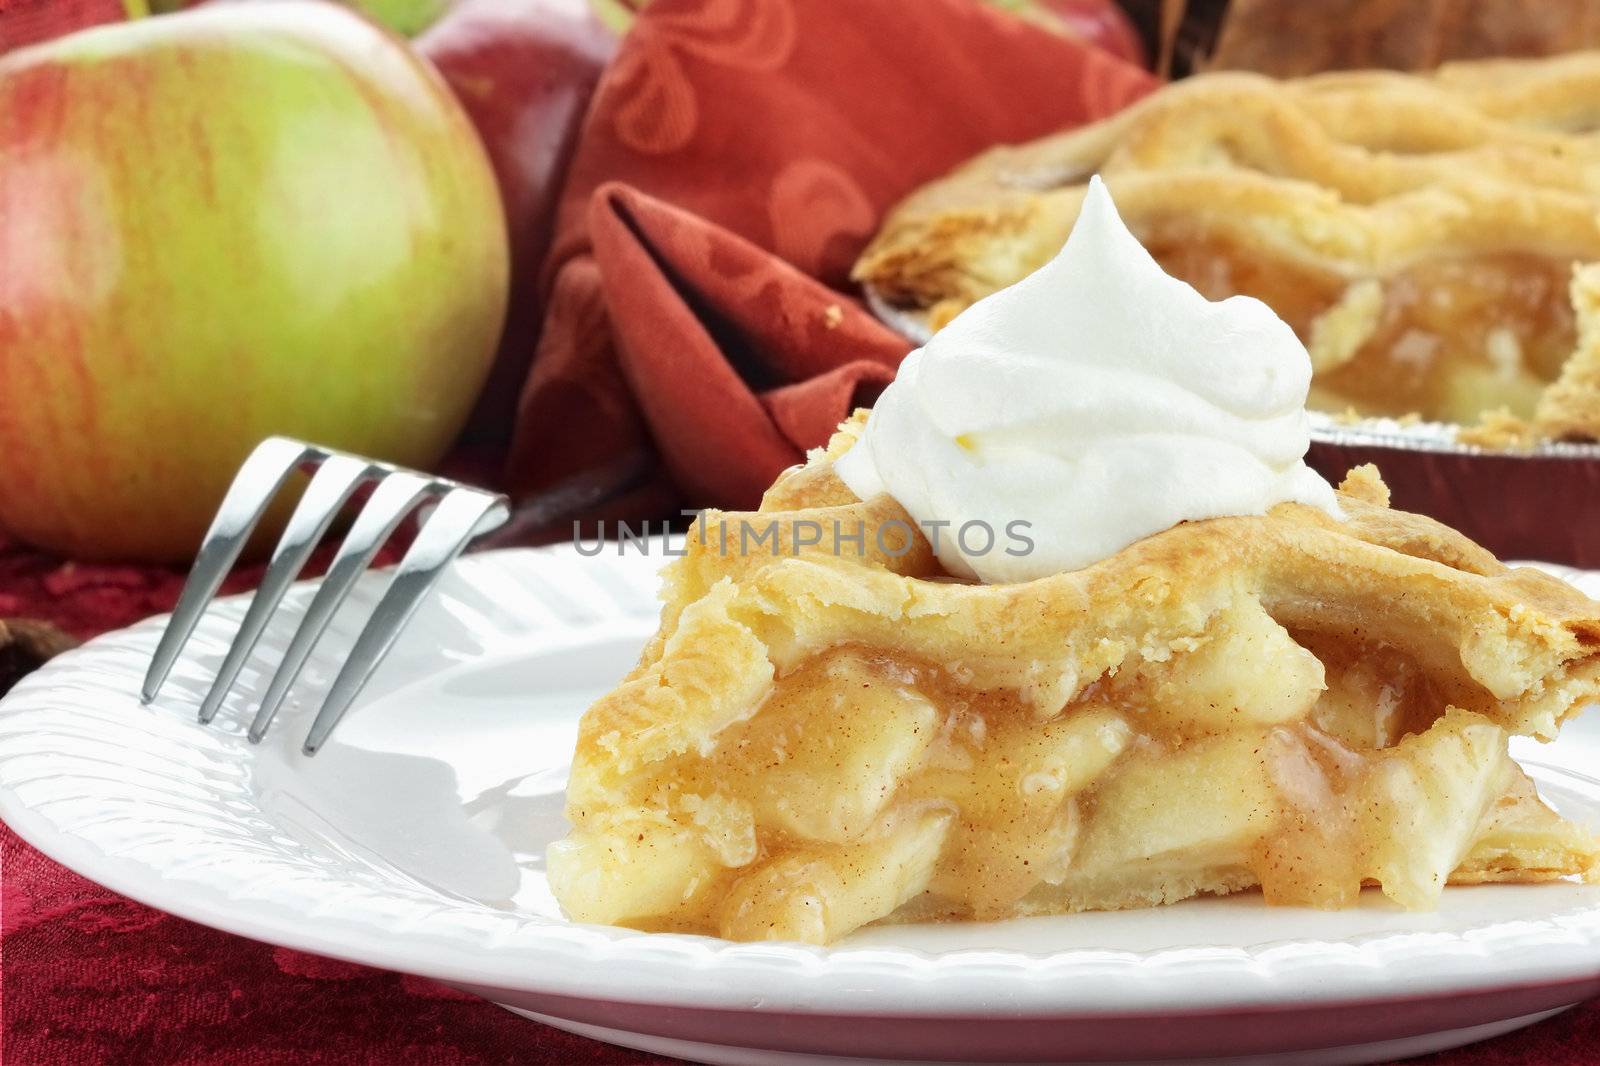 Slice of Apple Pie by StephanieFrey